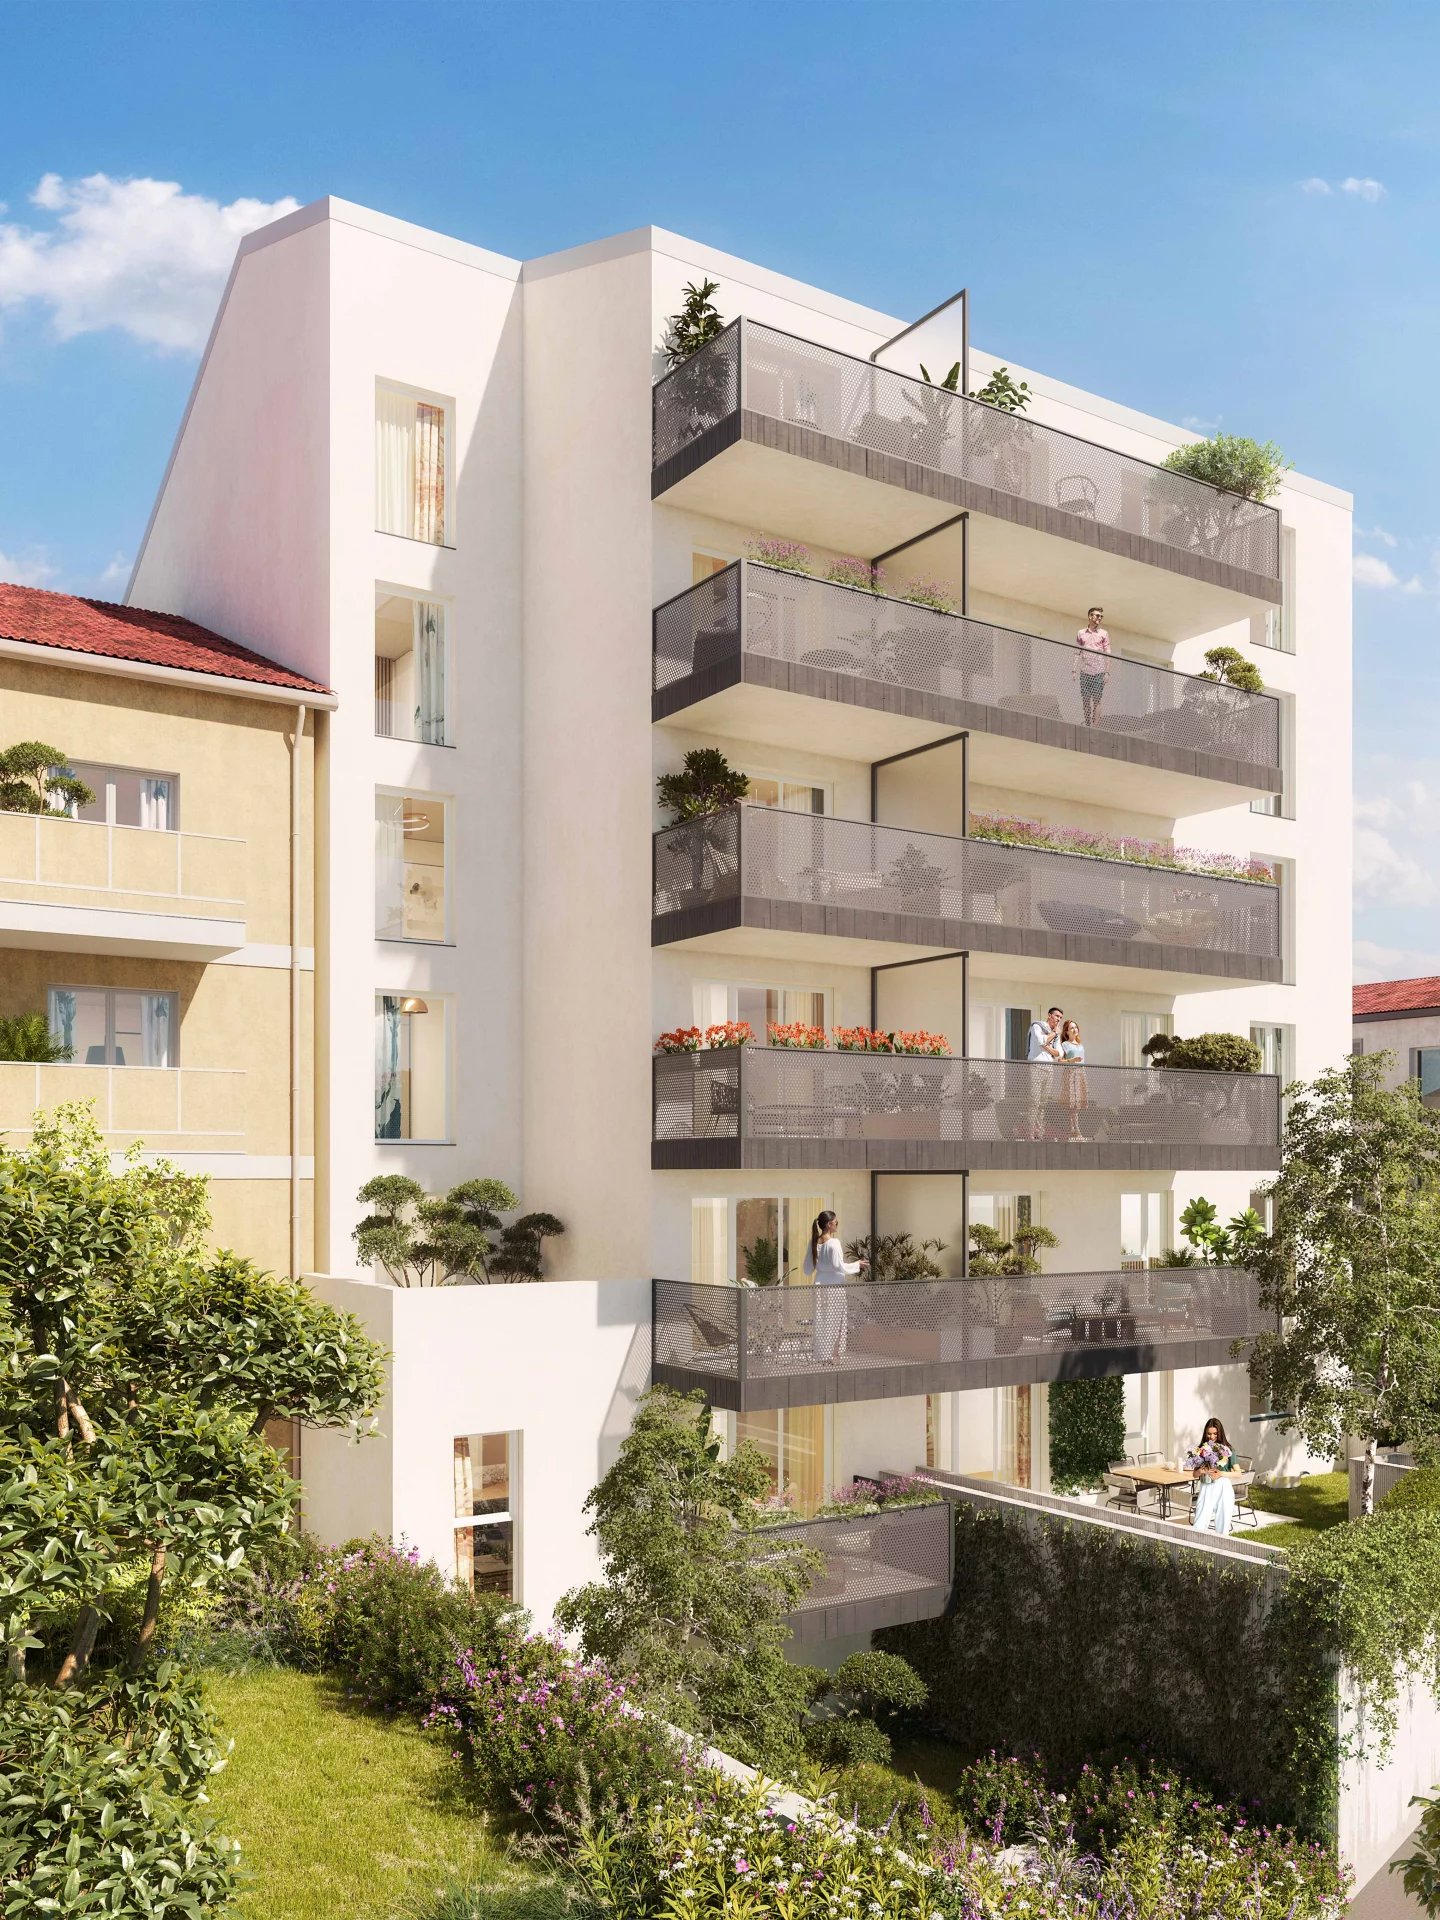 Nouvelle construction d'appartements de standing à Nice centre Est.